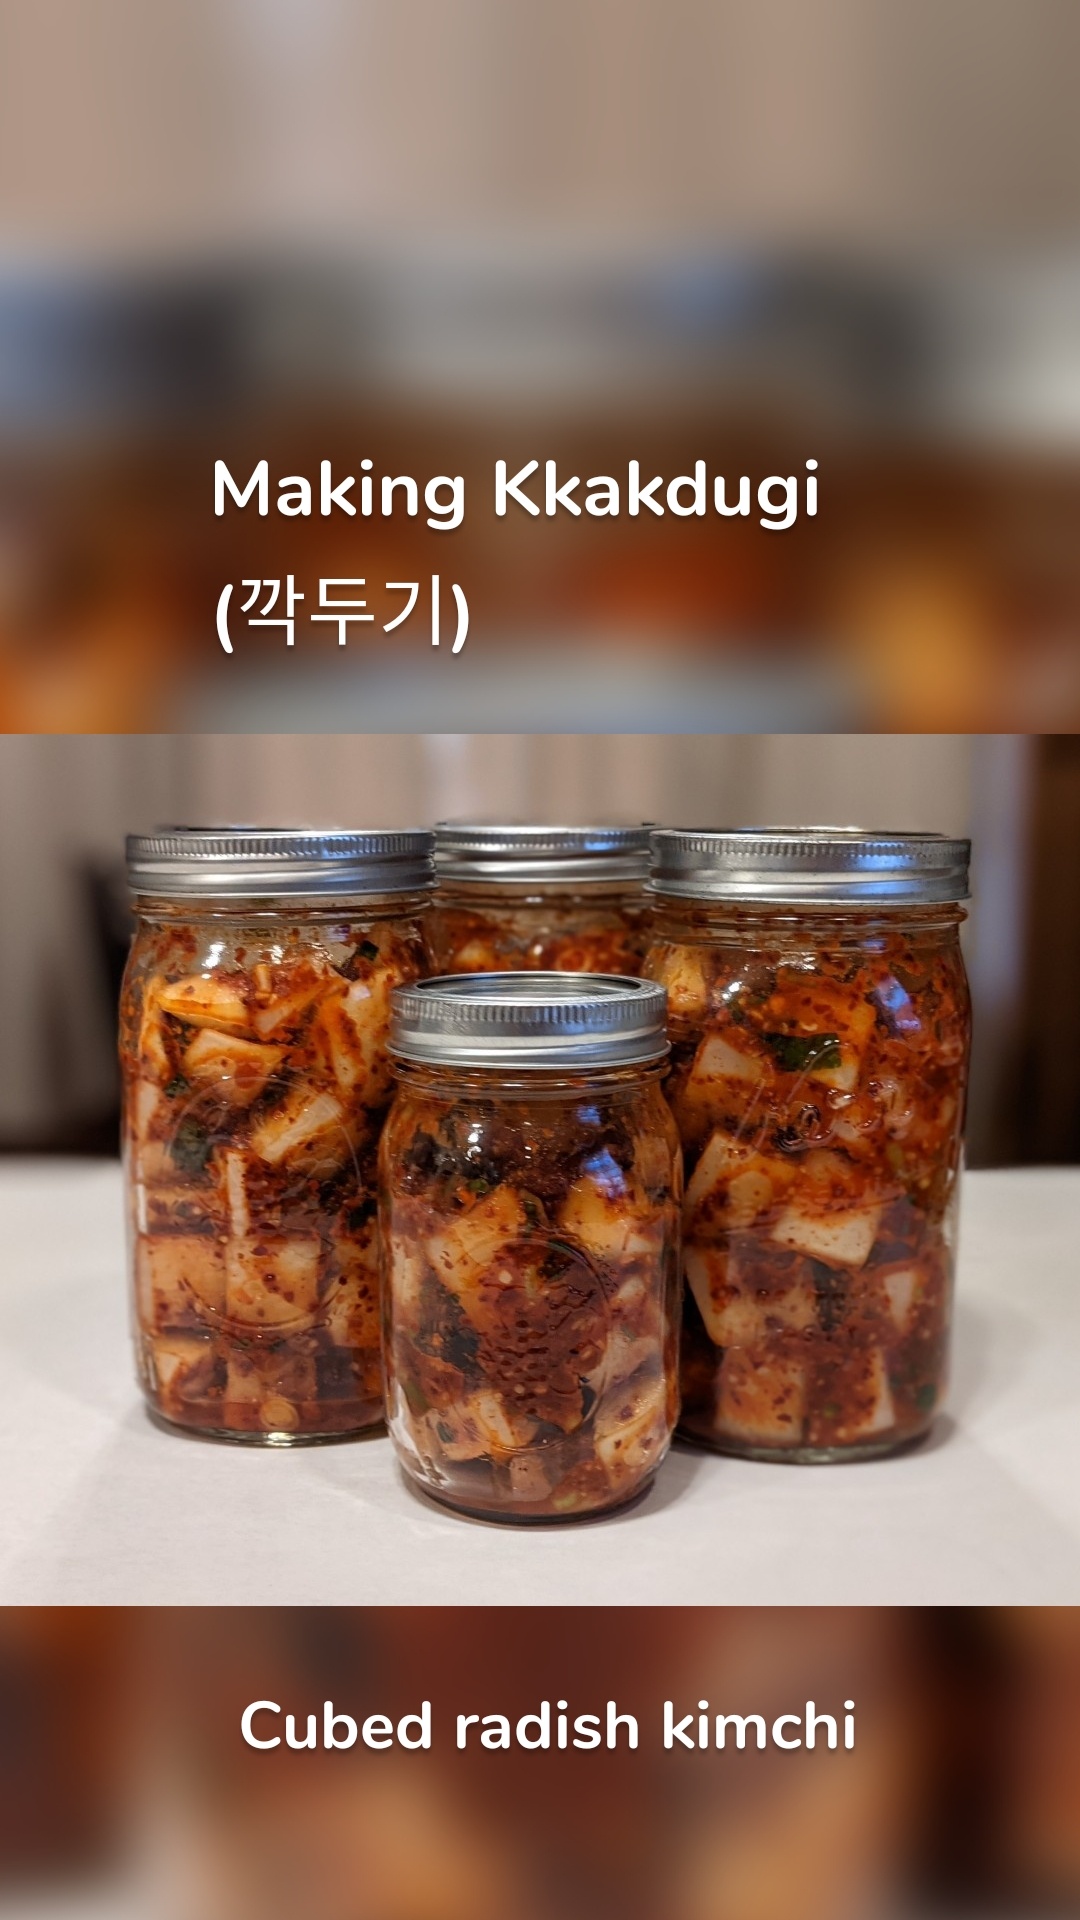 Cubed radish kimchi Making Kkakdugi 
(깍두기) 